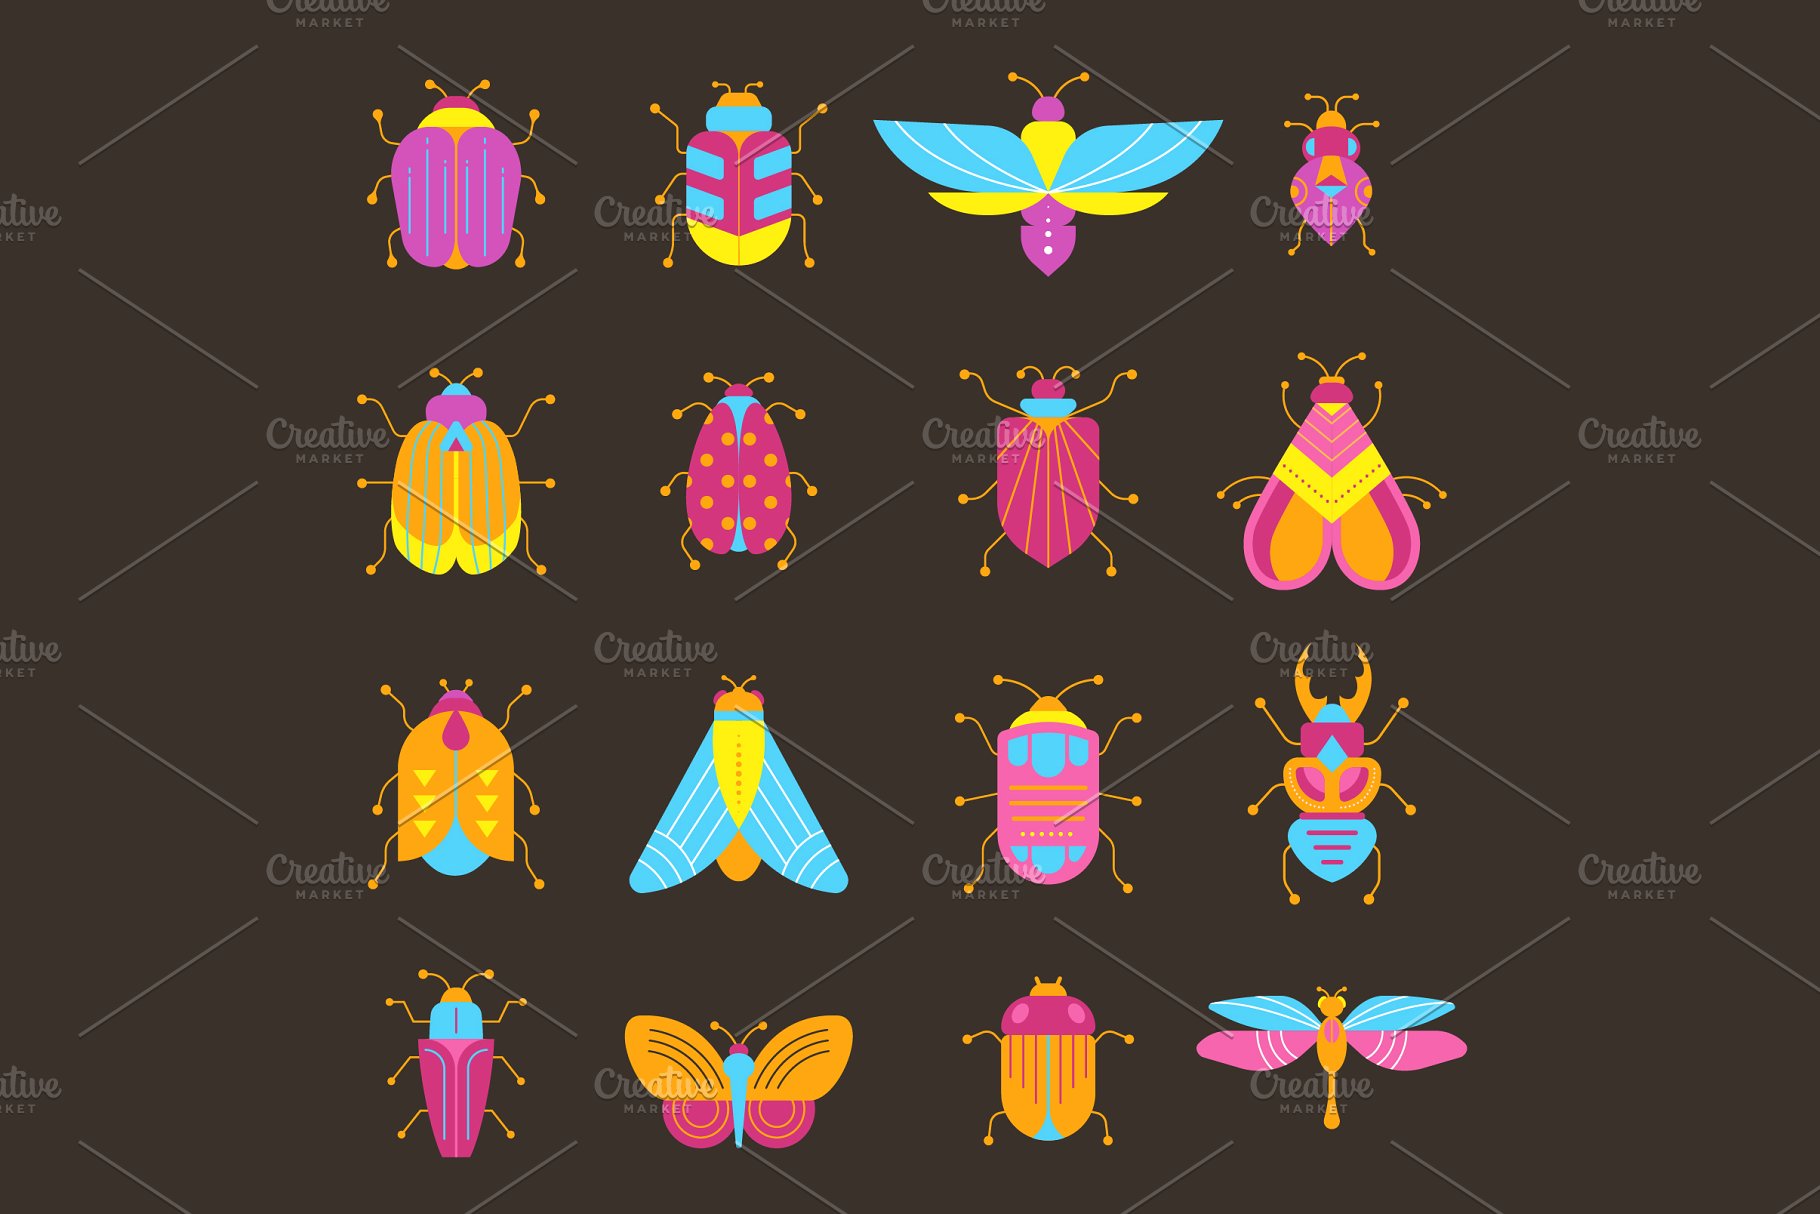 昆虫图形设计合集 Bugs and insects coll